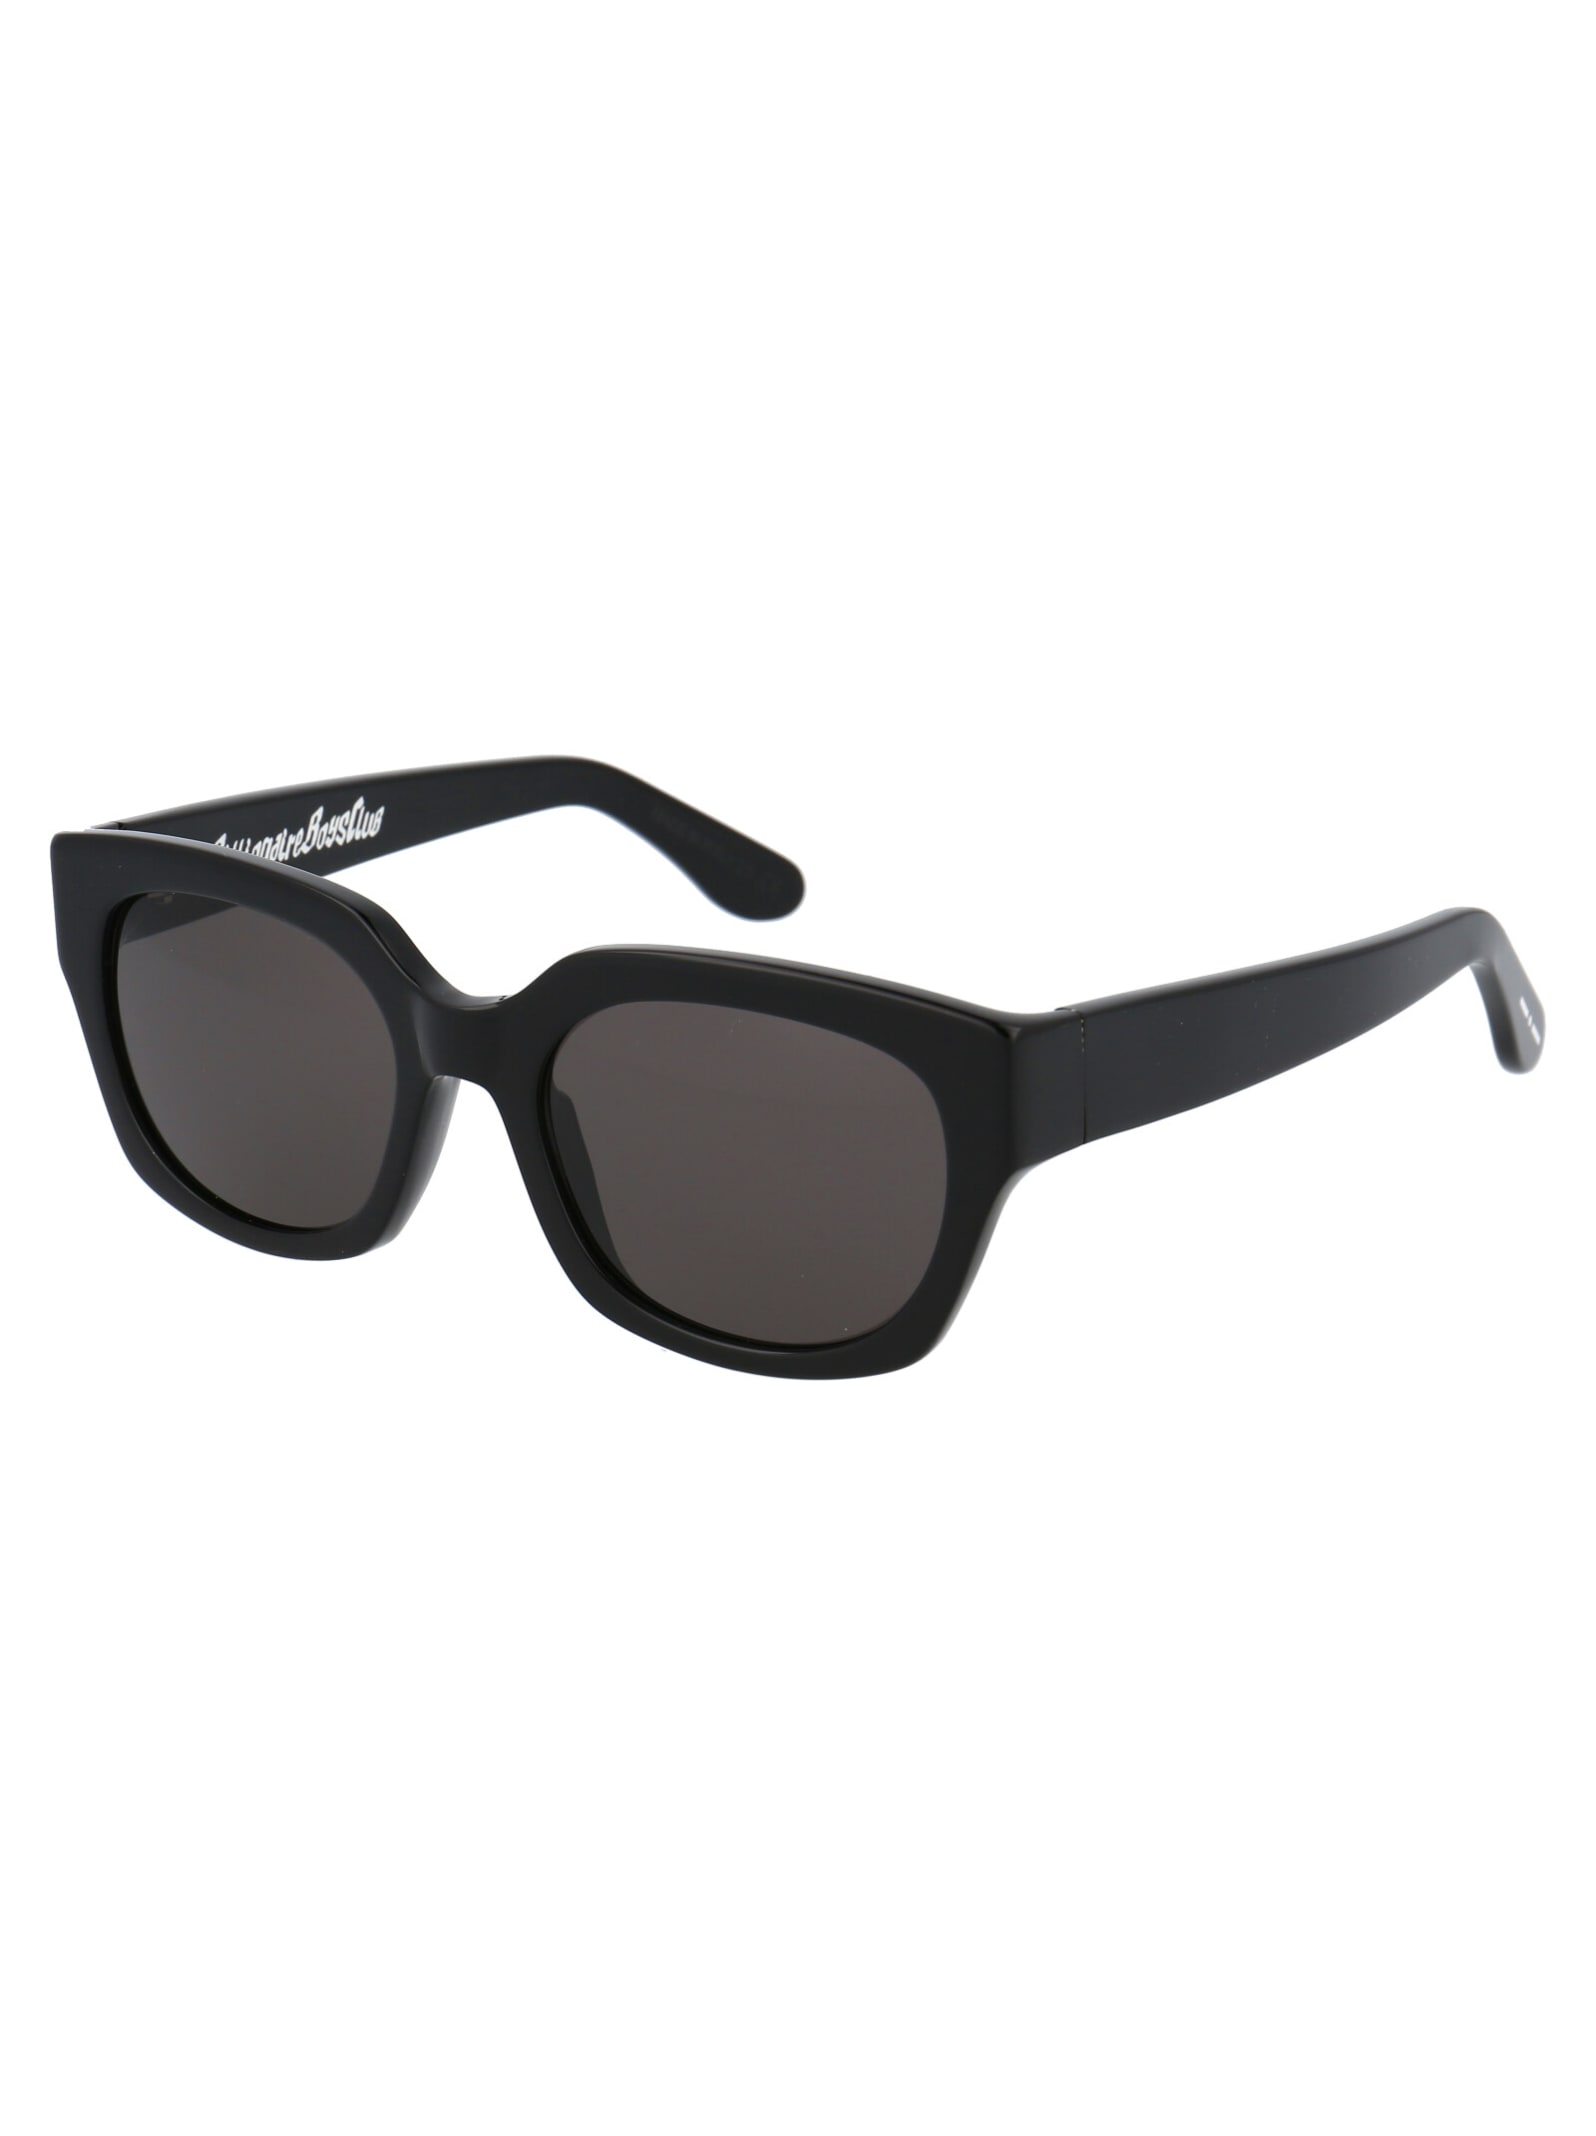 Shop Billionaire Boys Club Bbc005 Sunglasses In 009 Black